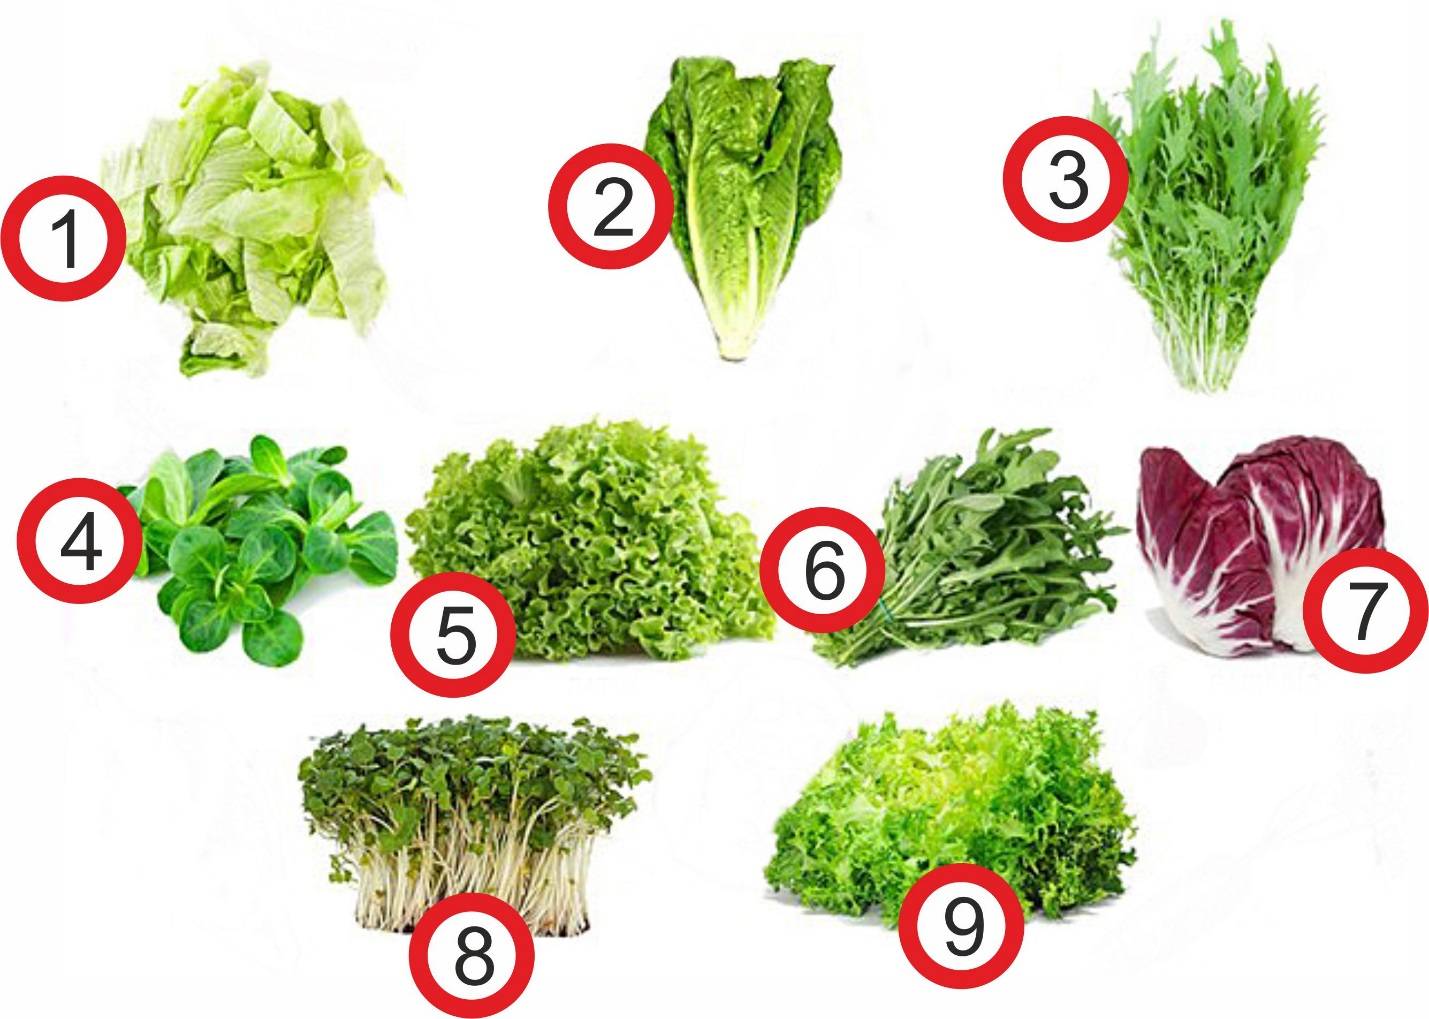 Кресс-салат на подоконнике: как выращивать эффективно